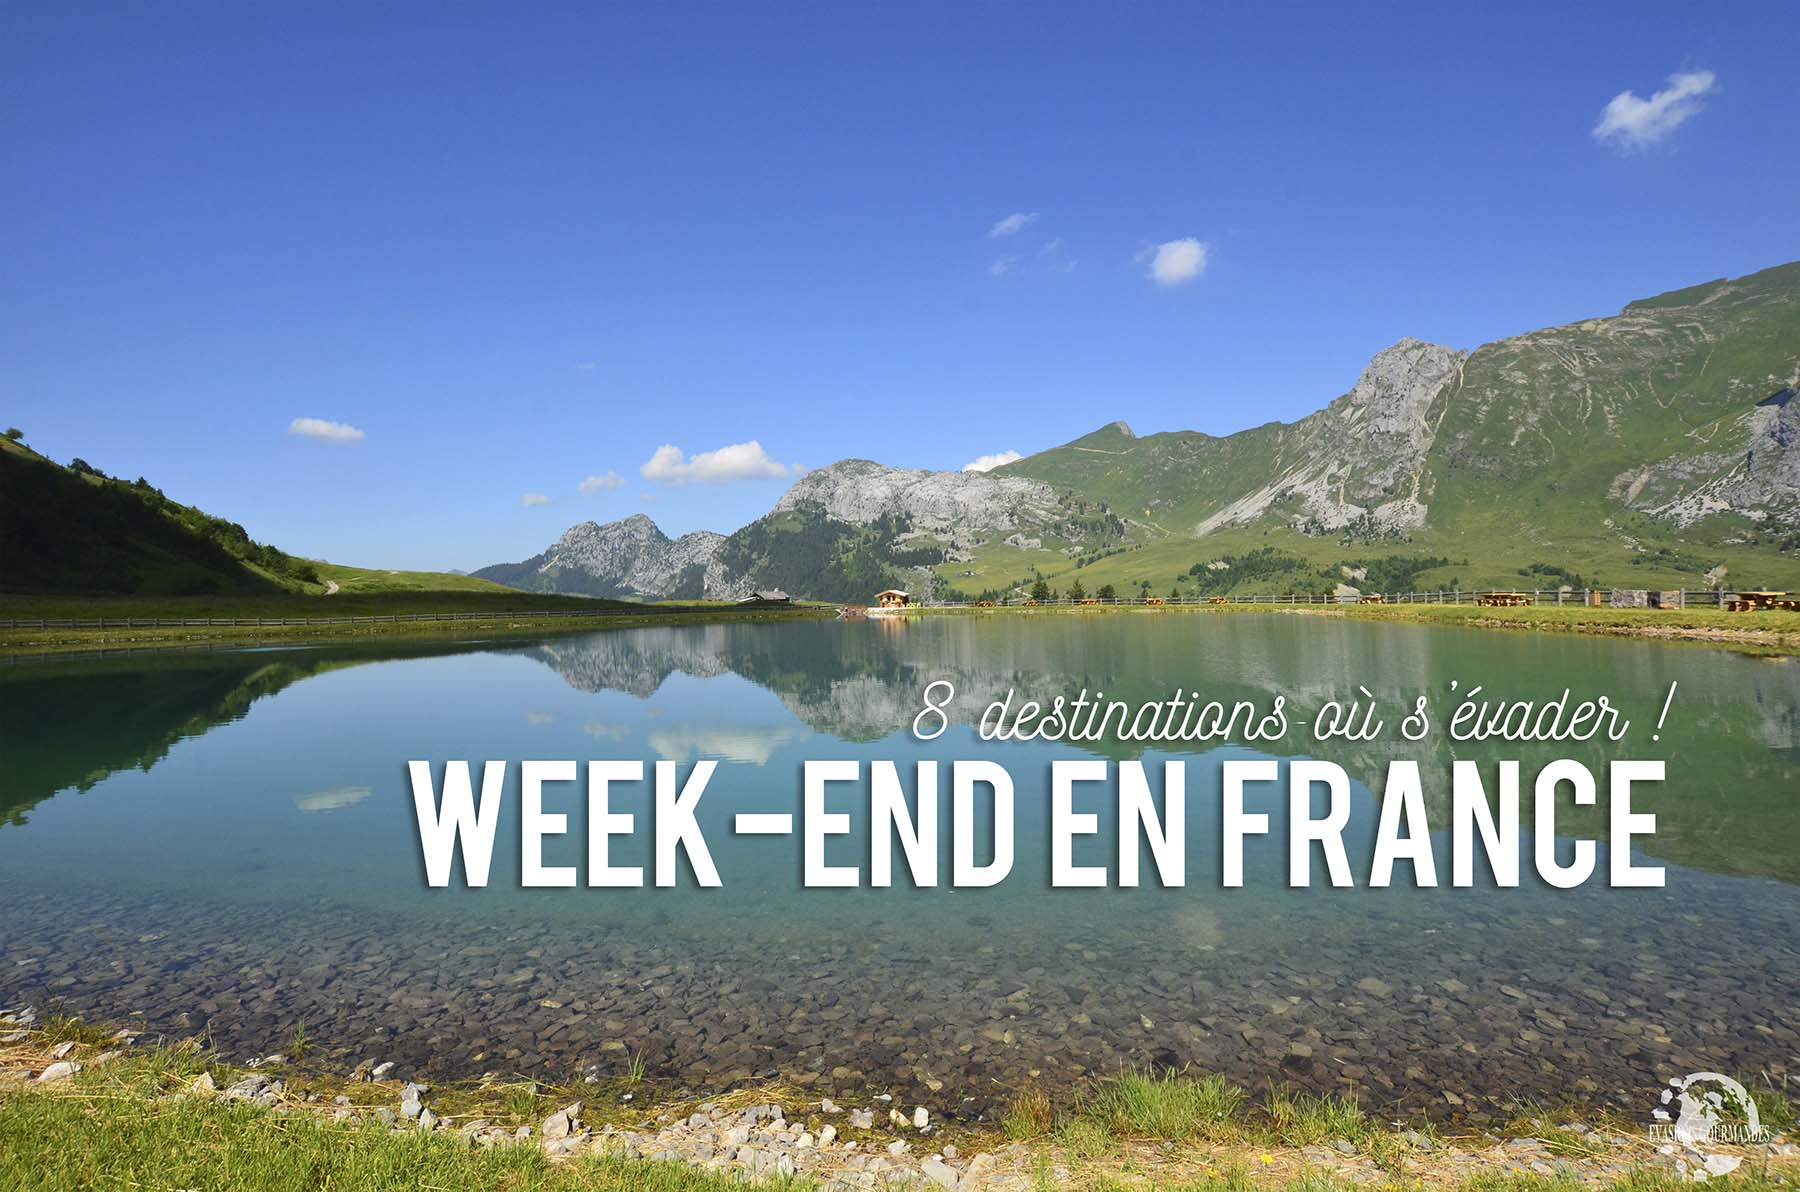 Week-end en France